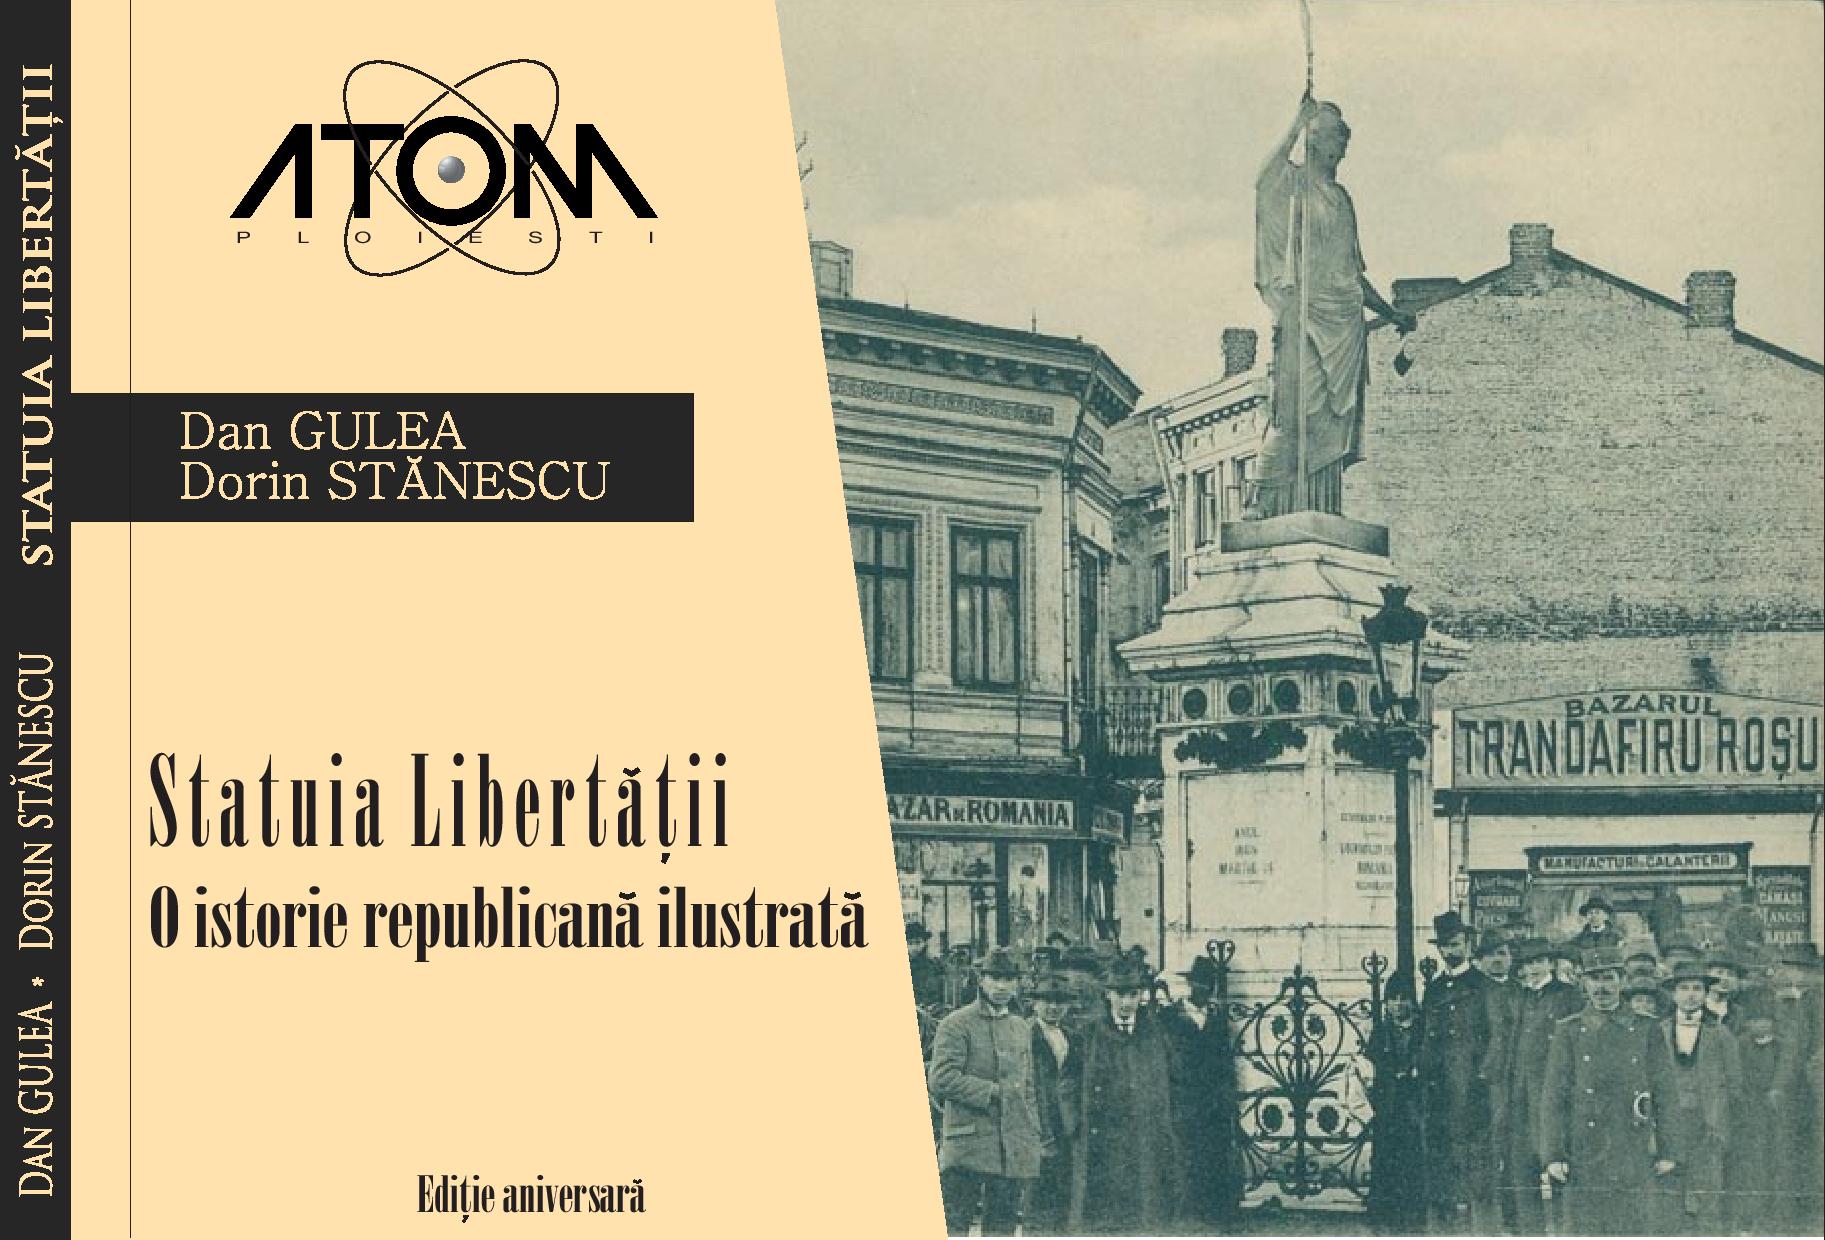 Statuia Libertatii – O istorie Republicana Ilustrata | Dan Gulea, Dorin Stanescu ATOM Arta, arhitectura